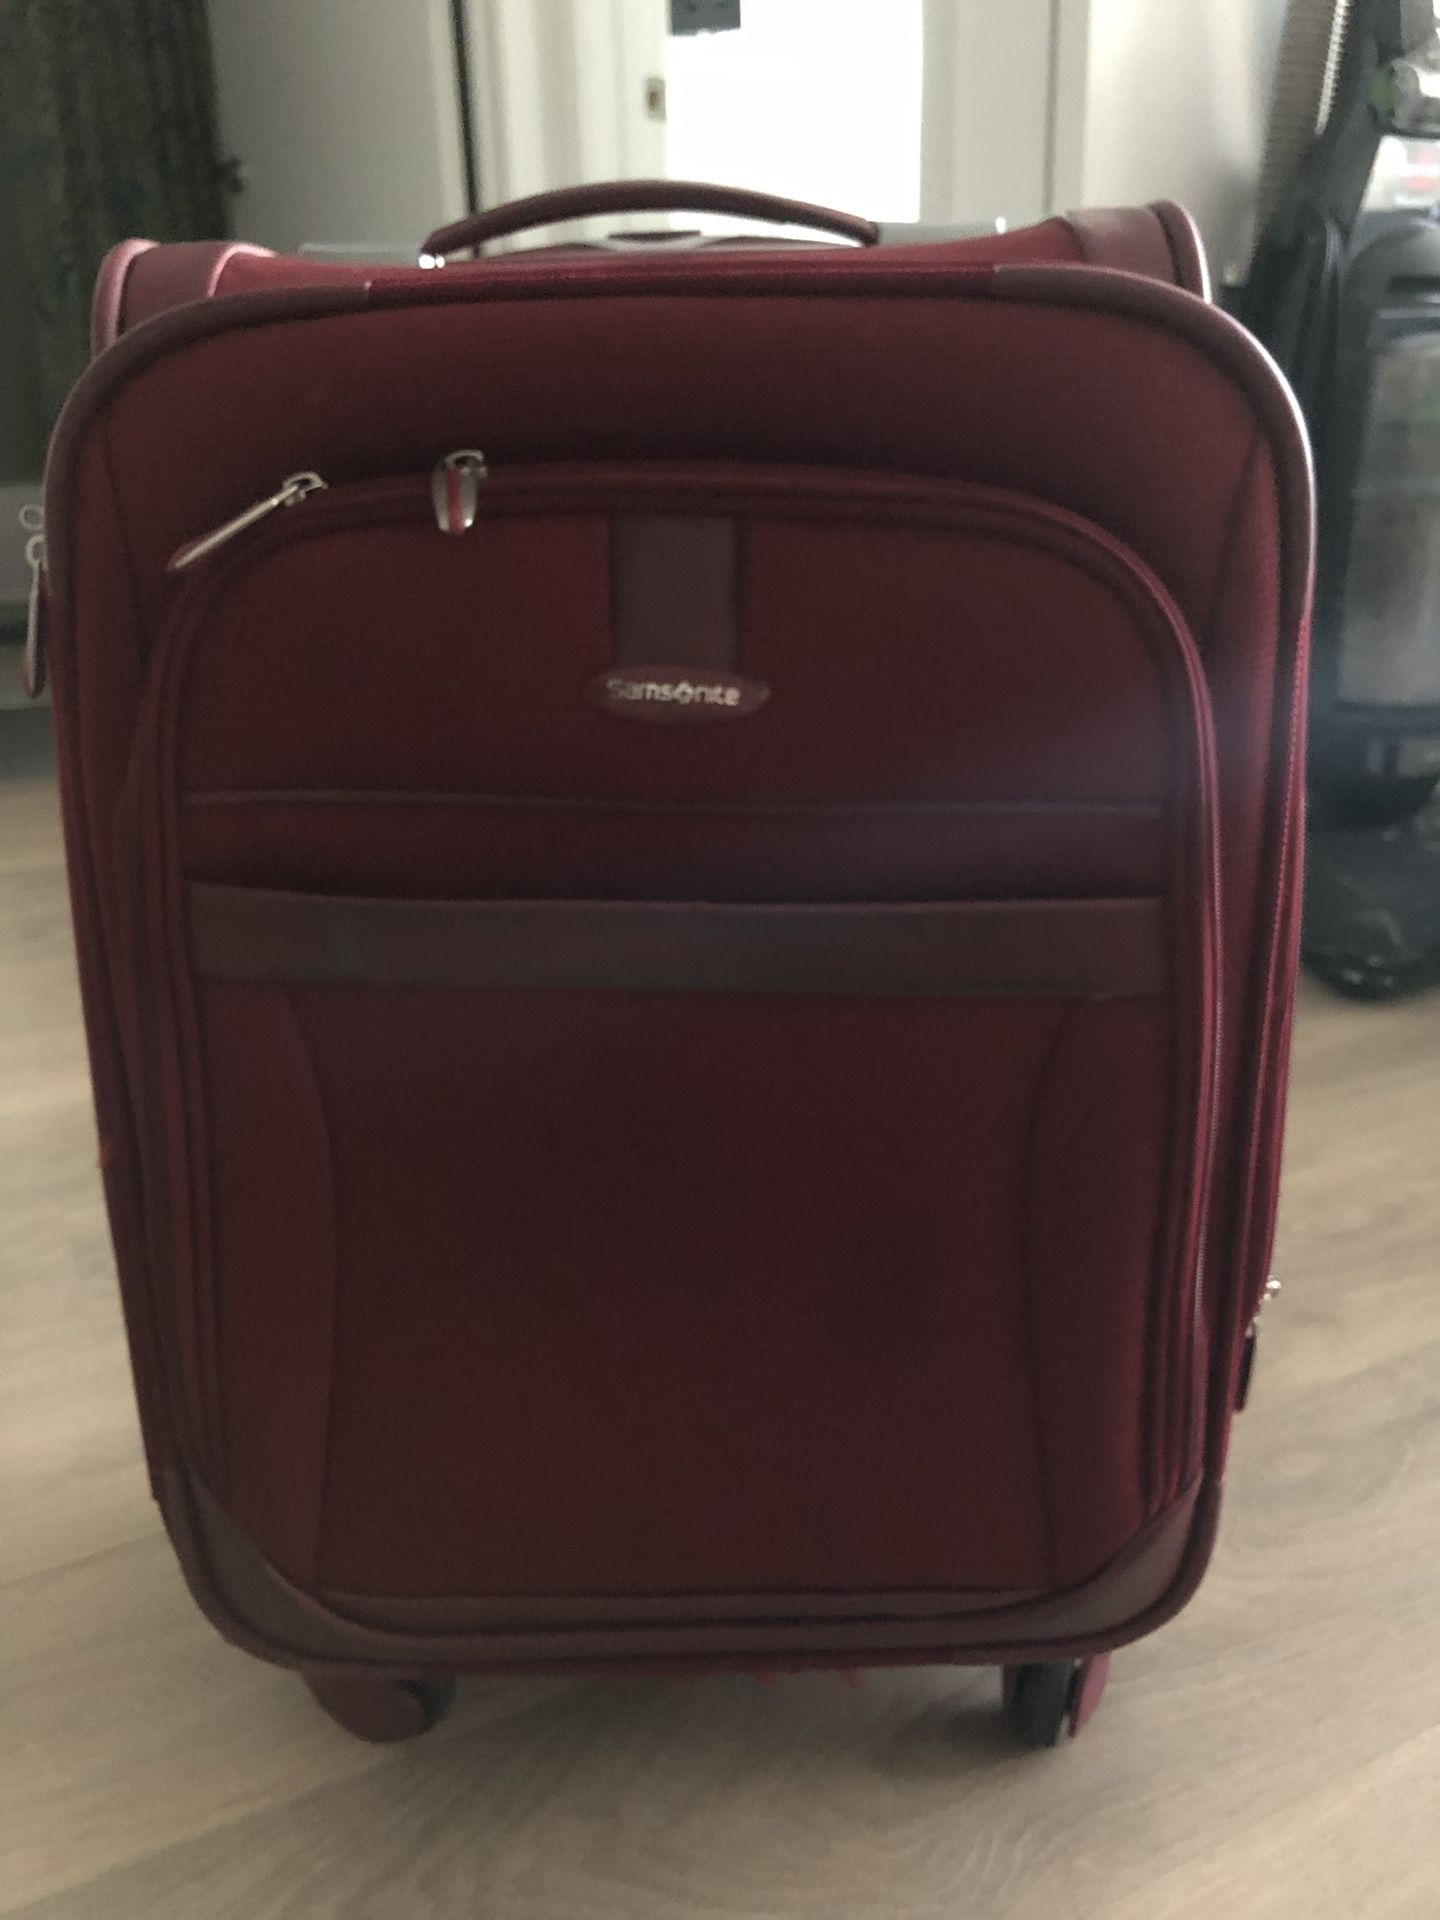 21 inch Samsonite suitcase